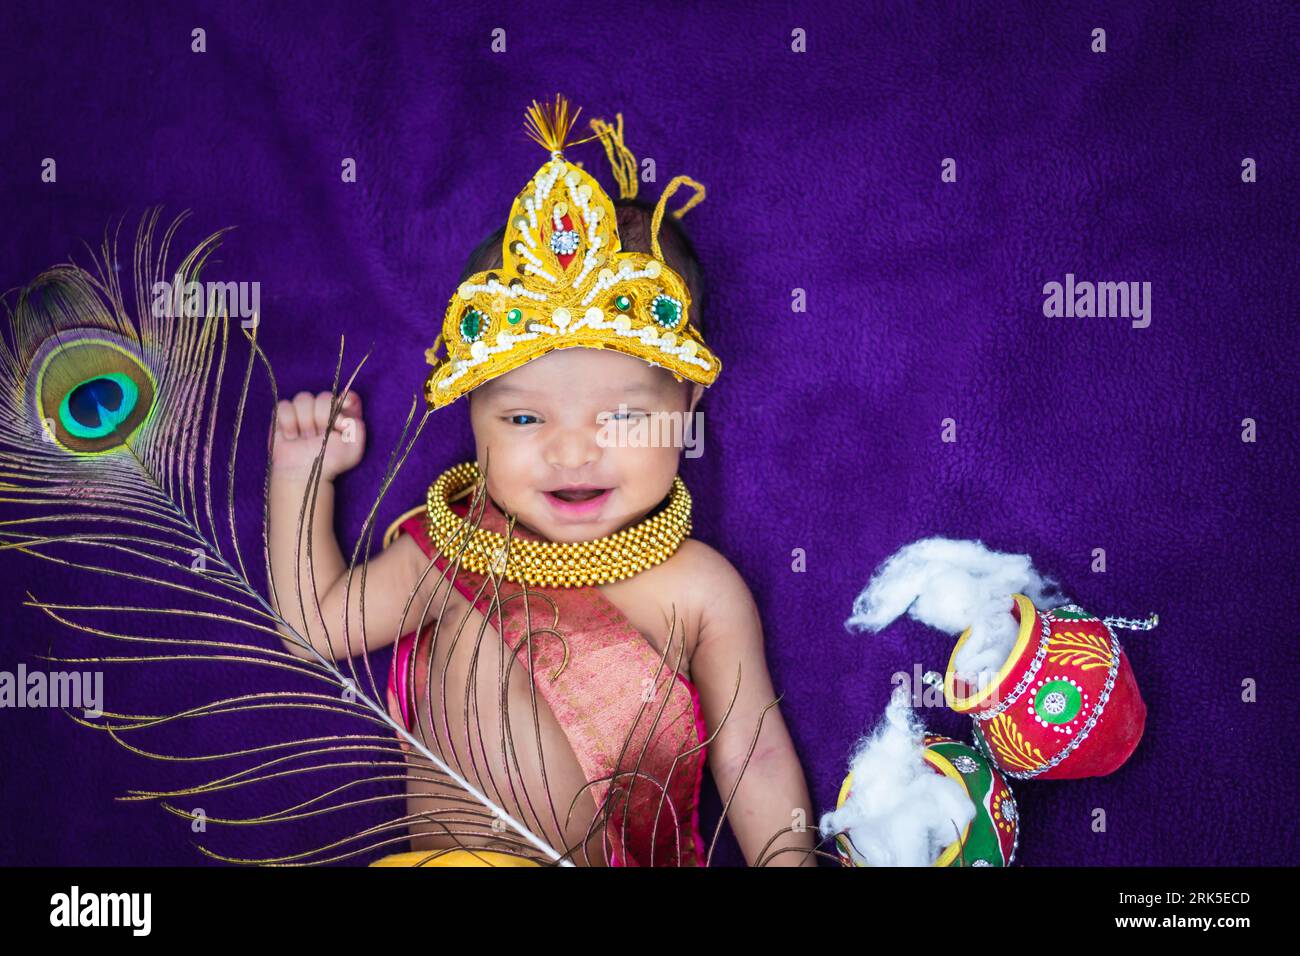 bambino neonato in krishna vestito con puntelli da una prospettiva unica e con espressioni diverse Foto Stock